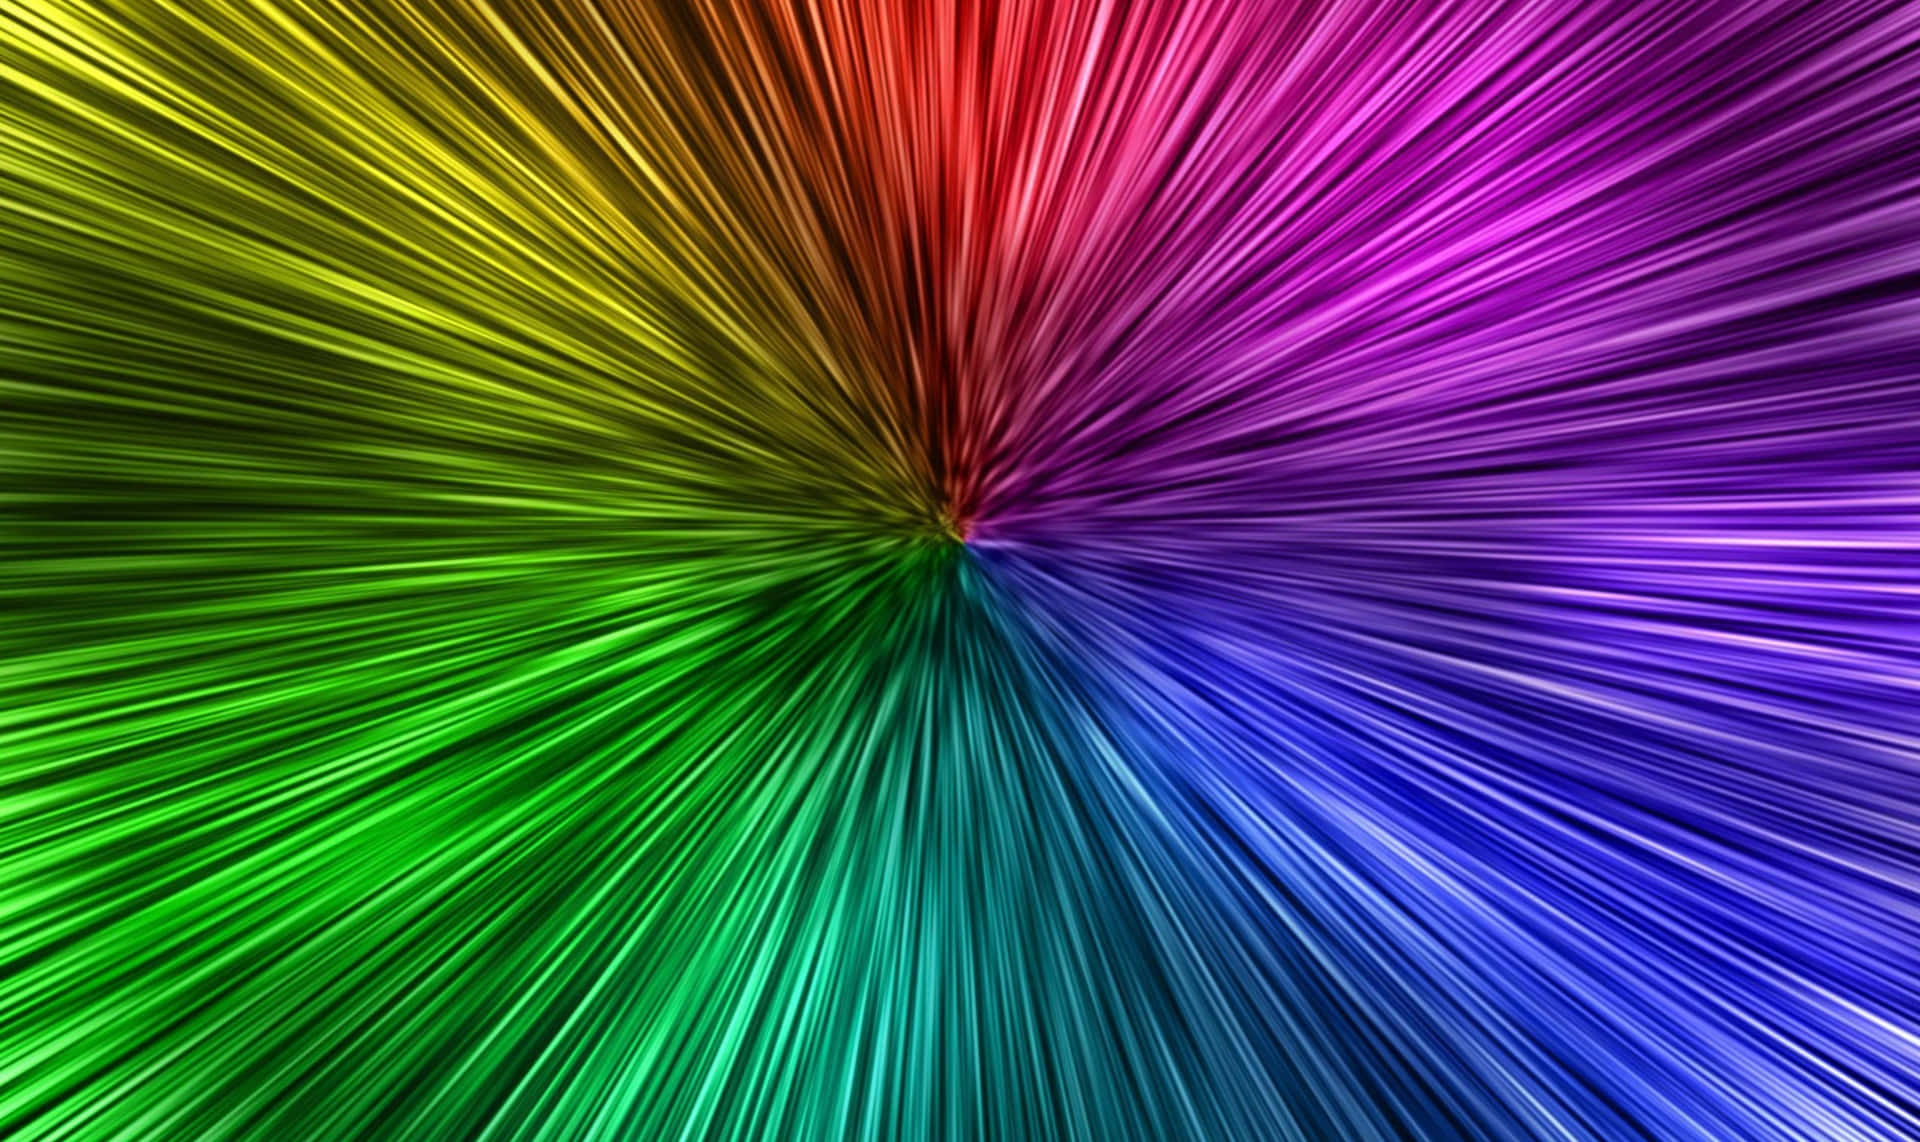 Rayasde Neón De Colores Llamativos En Un Abstracto Estallido Fondo de pantalla